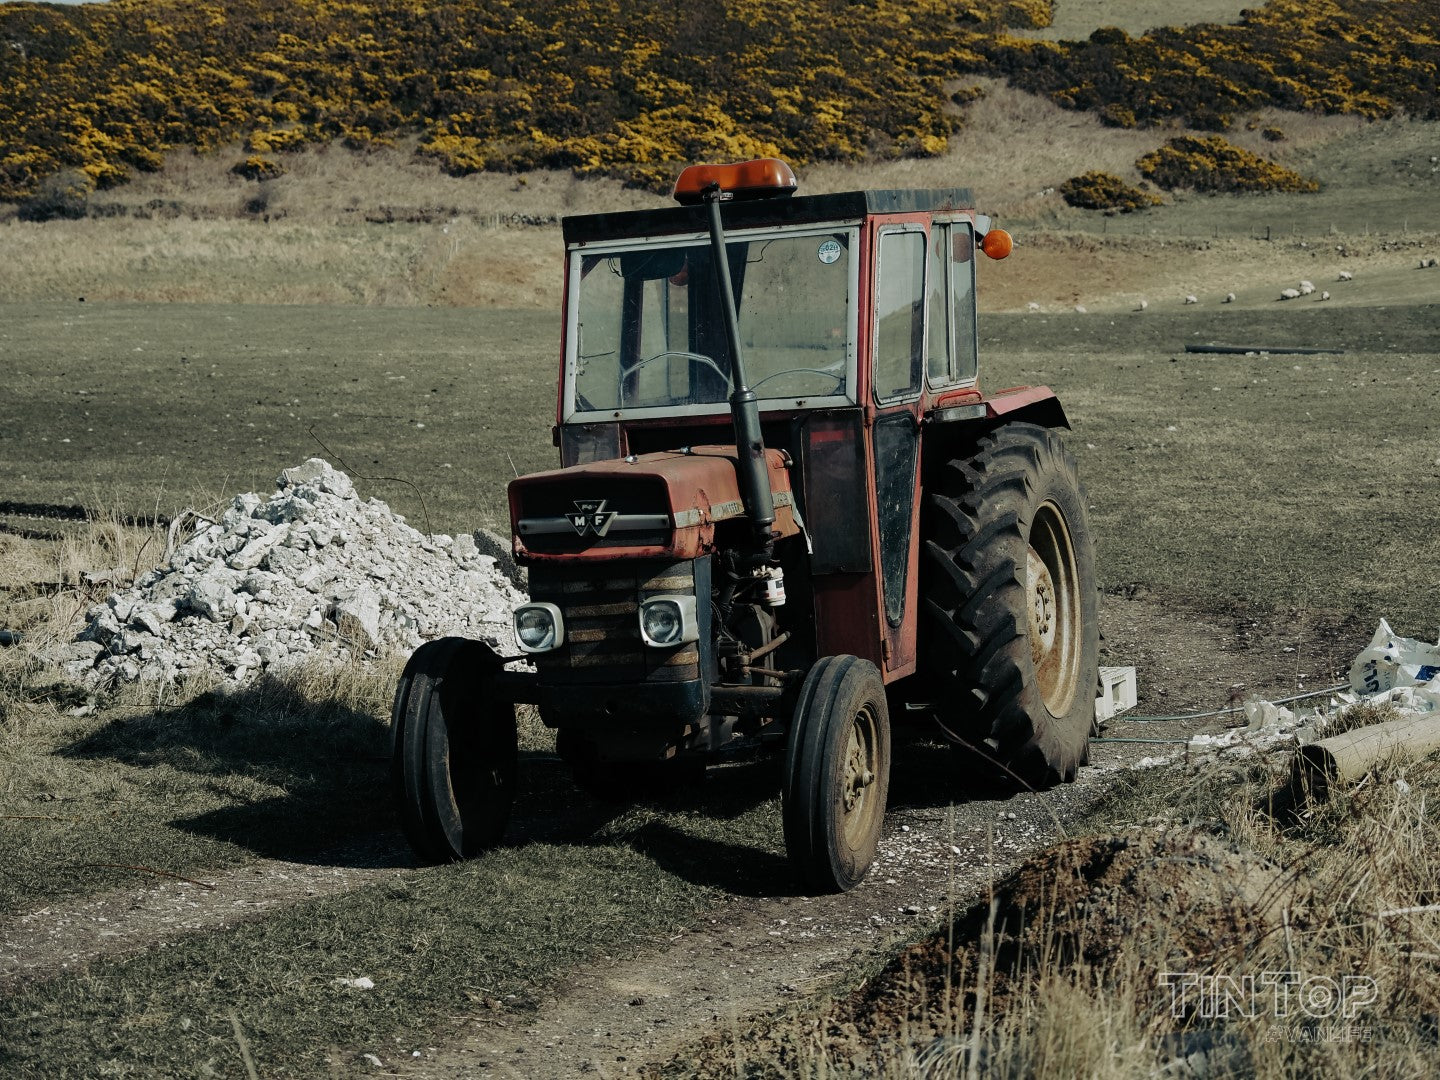 Rusty tractor on Rathlin Island, Northern Ireland